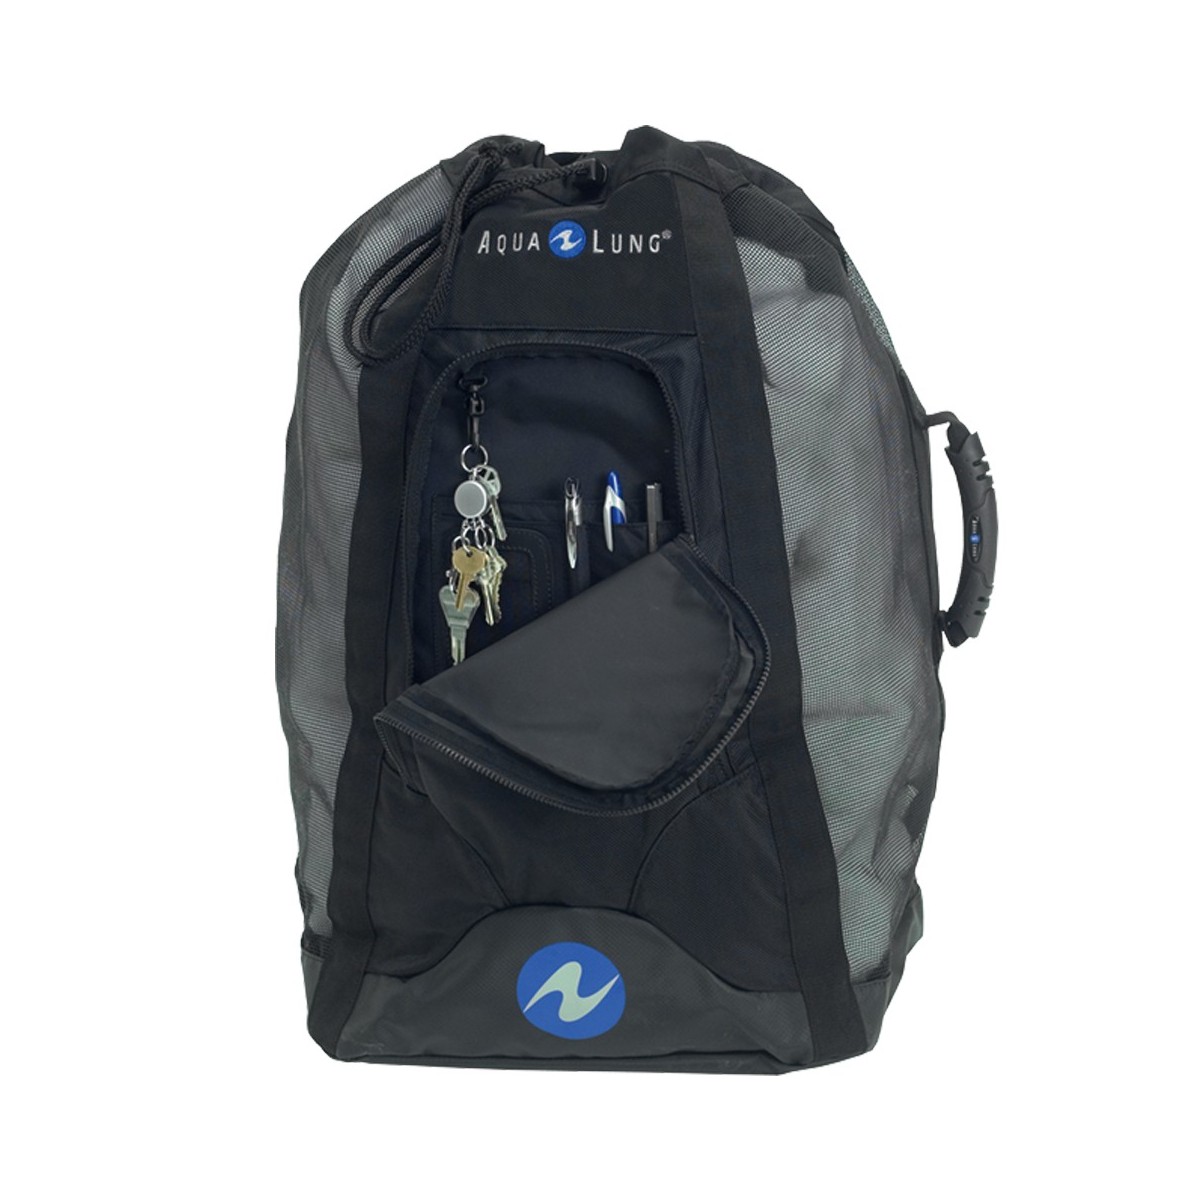 Aqua lung Oceanpack Deluxe Mesh Backpack Bag